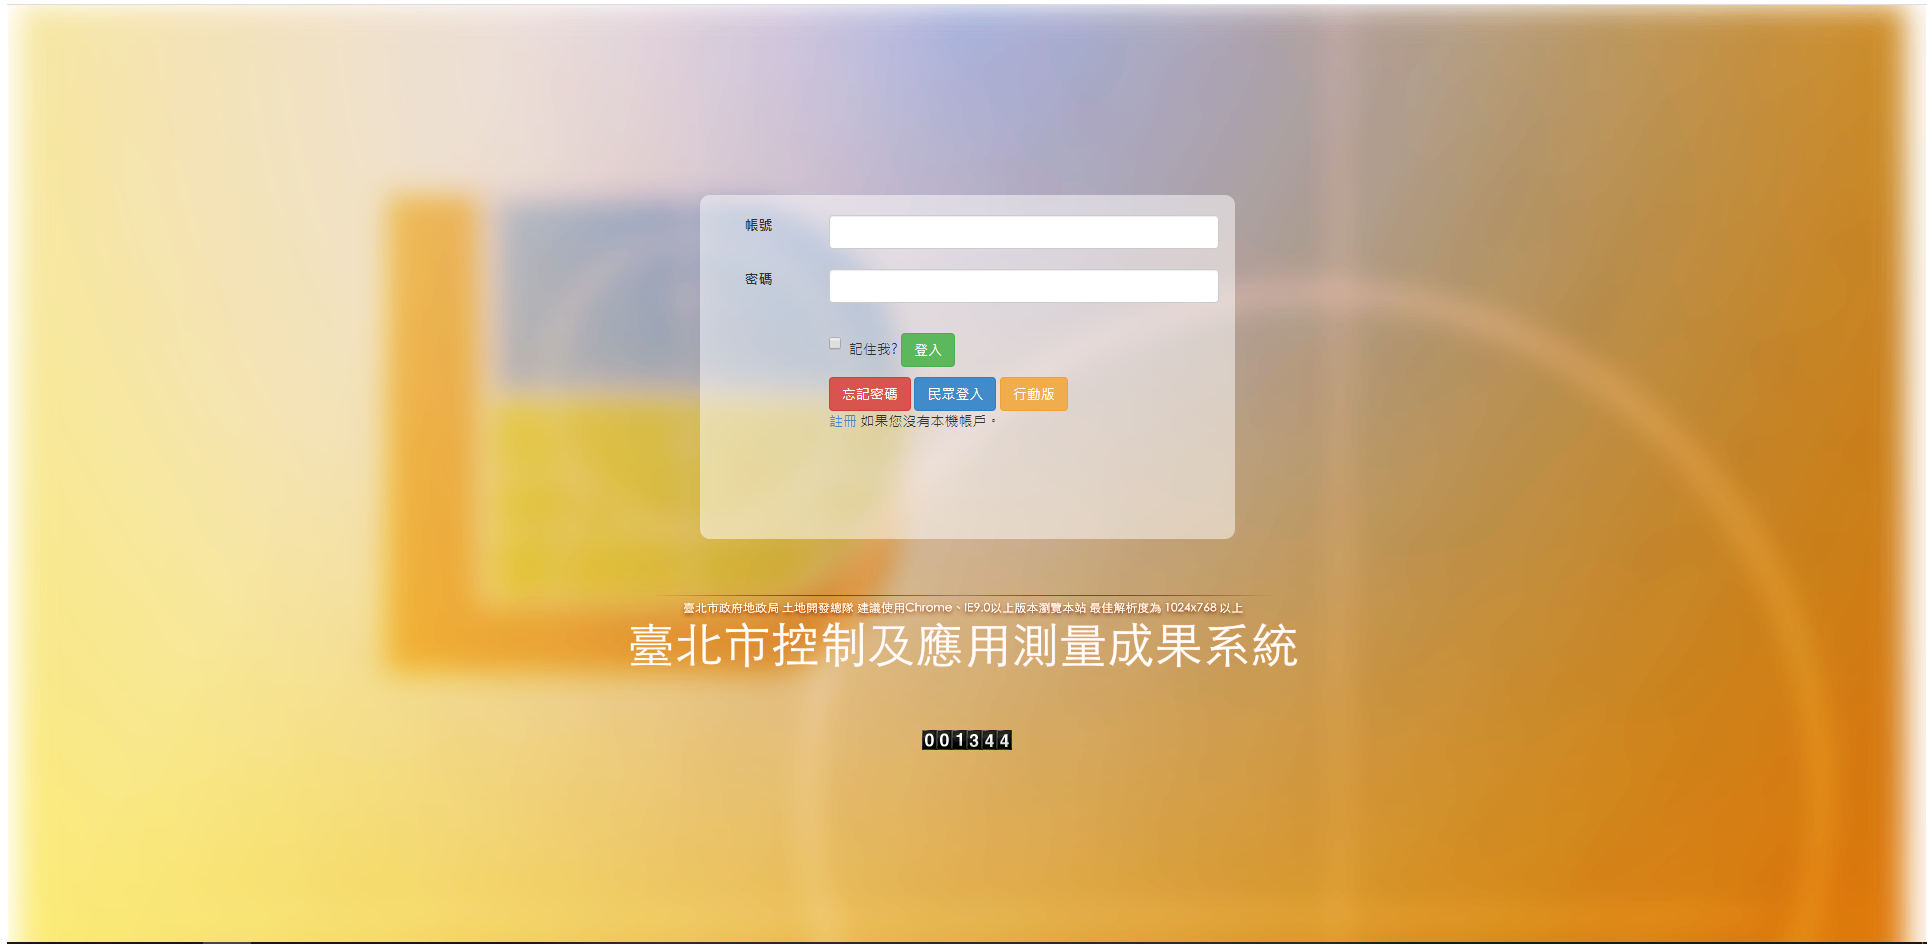 臺北市控制及應用測量成果系統首頁